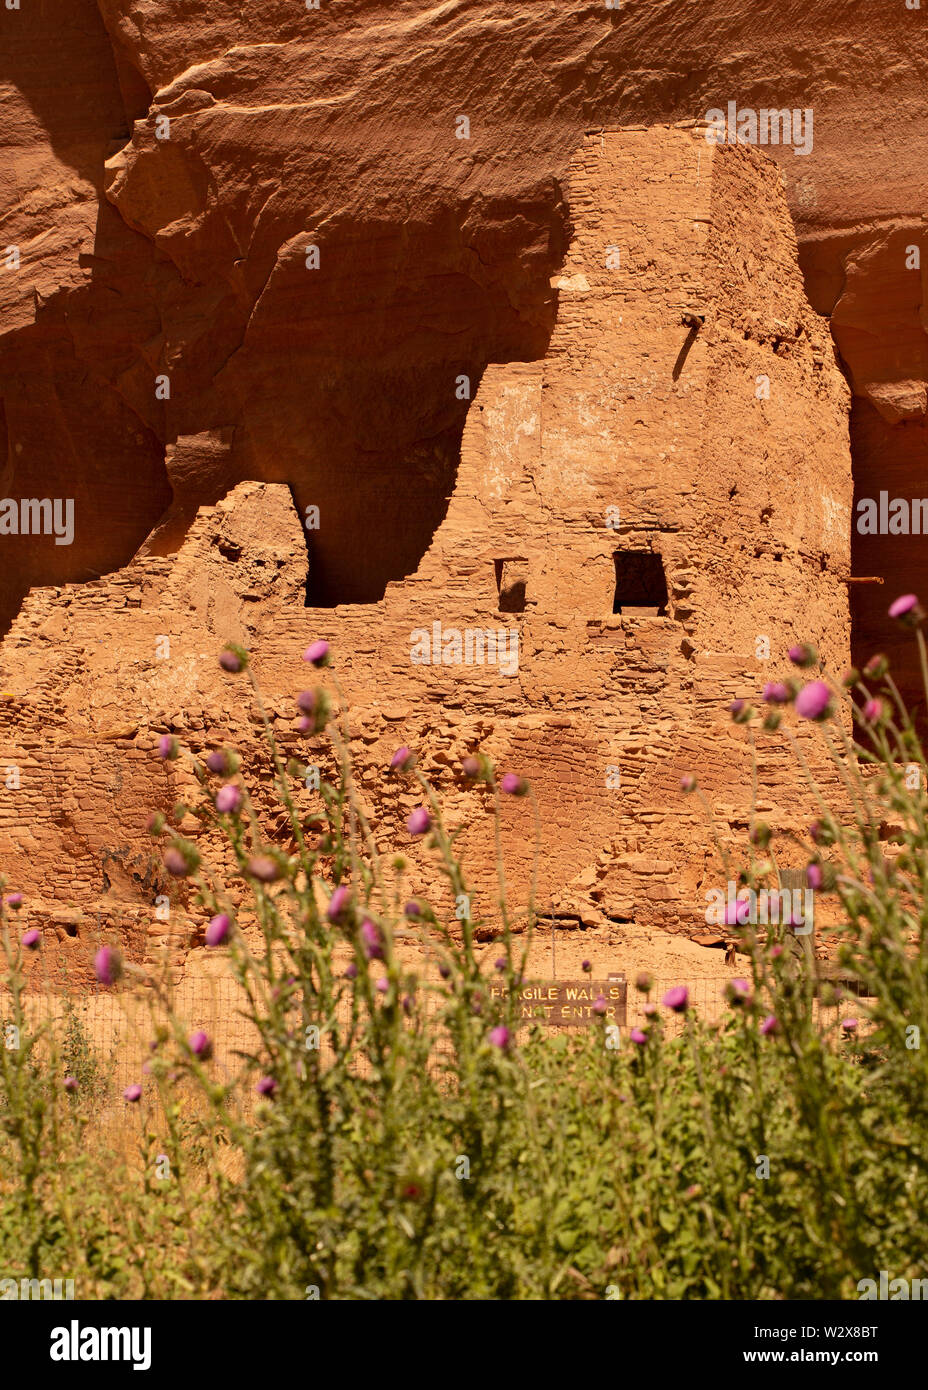 Ruines archéologiques de Canyon de Chelly National Monument, Navajo Nation, Arizona Banque D'Images